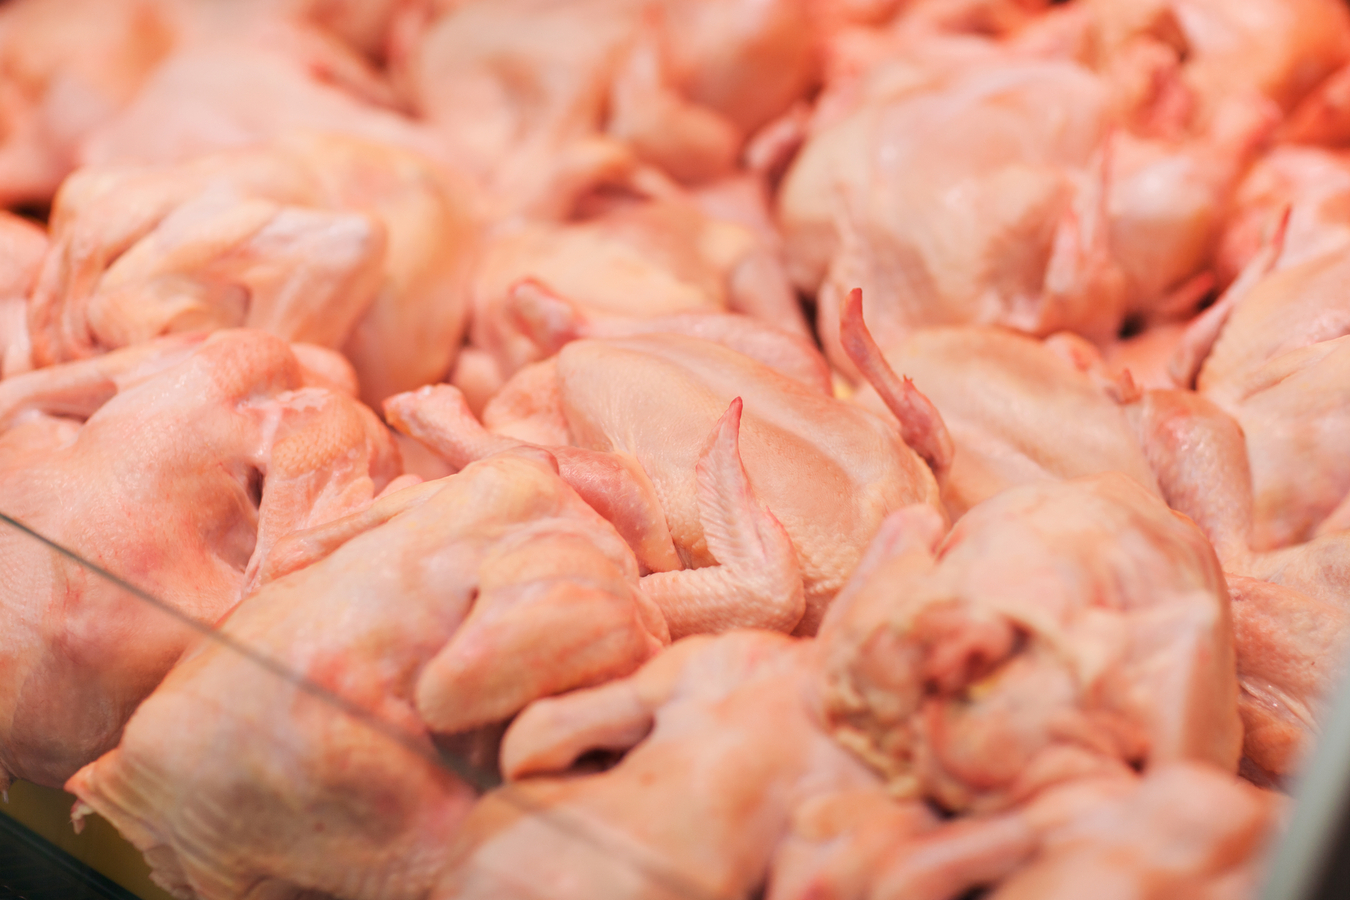 РК, РФ и Белоруссия намерены обсудить проблемы с транзитом в Казахстан мяса птицы из США